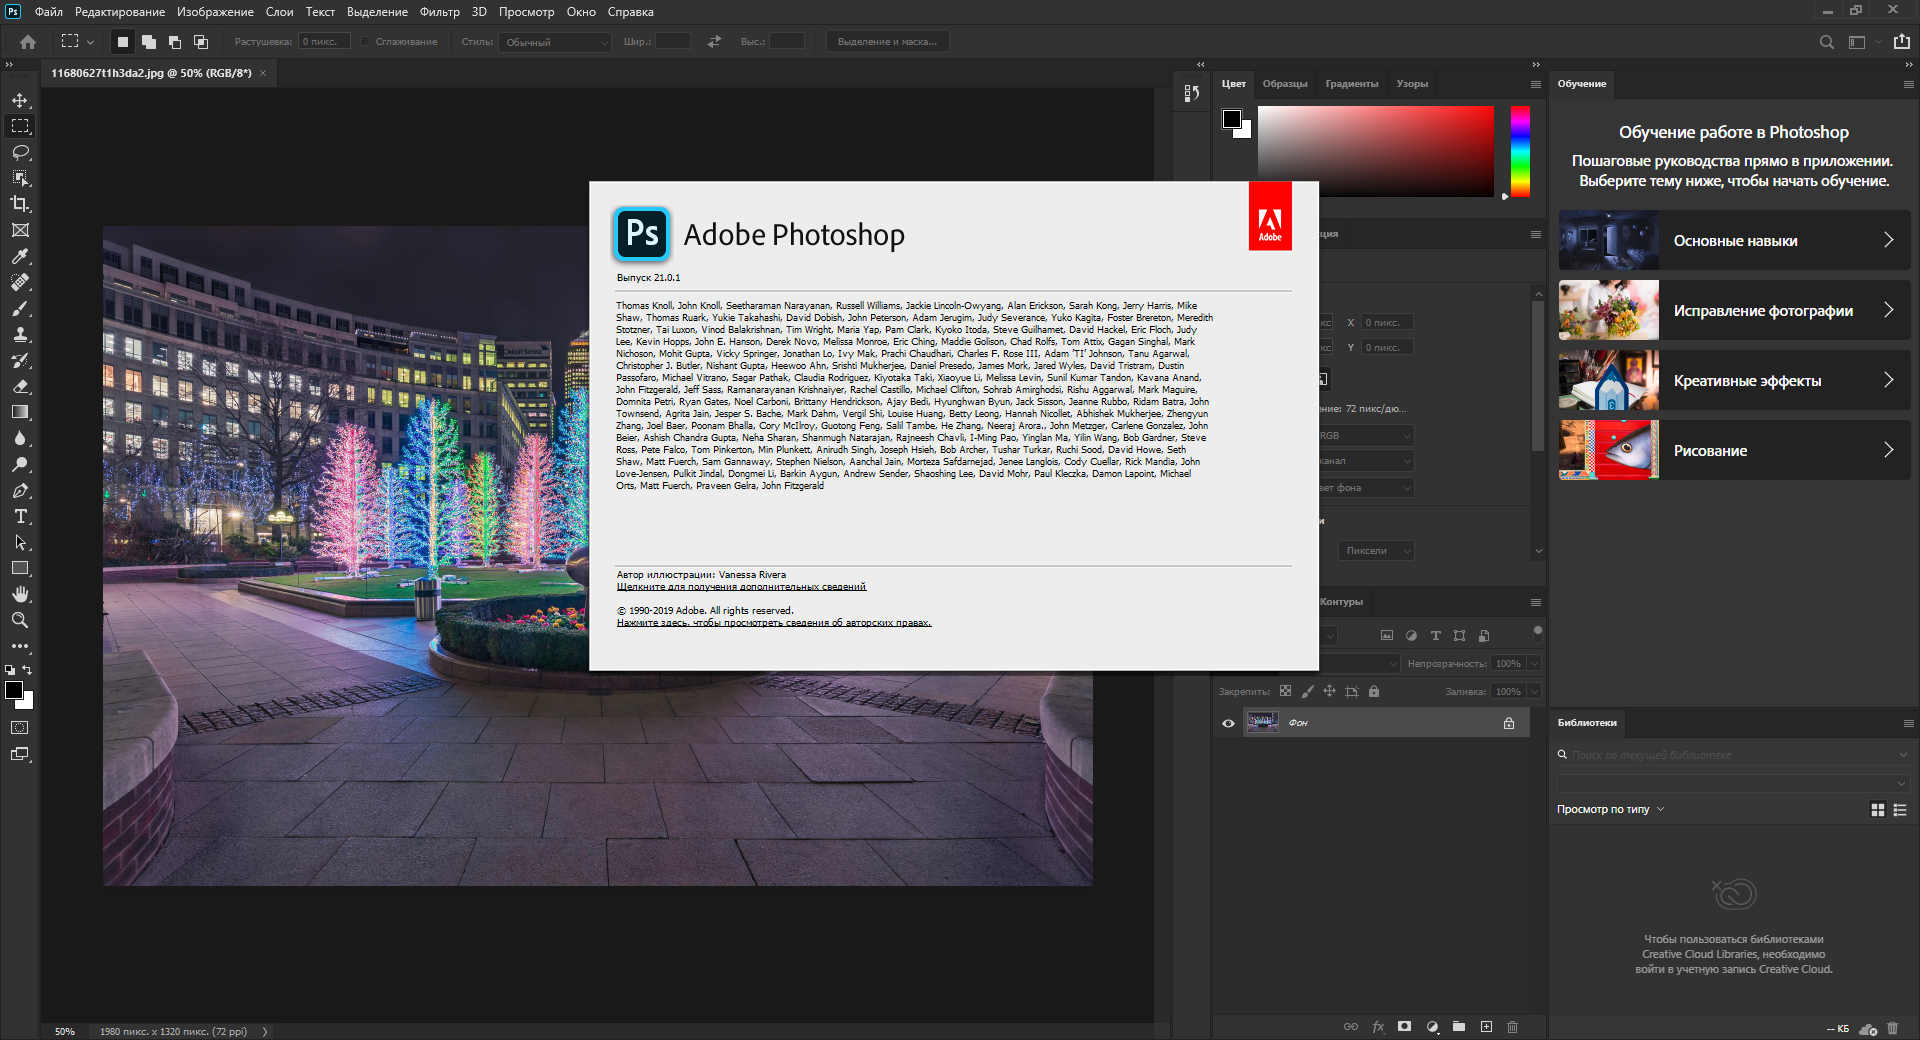 Adobe бесплатная версия с официального сайта. Adobe Photoshop 2020. Adobe Photoshop cc 2020. Фотошоп 2020. Adobe Photoshop 2020 21.0.1.47.